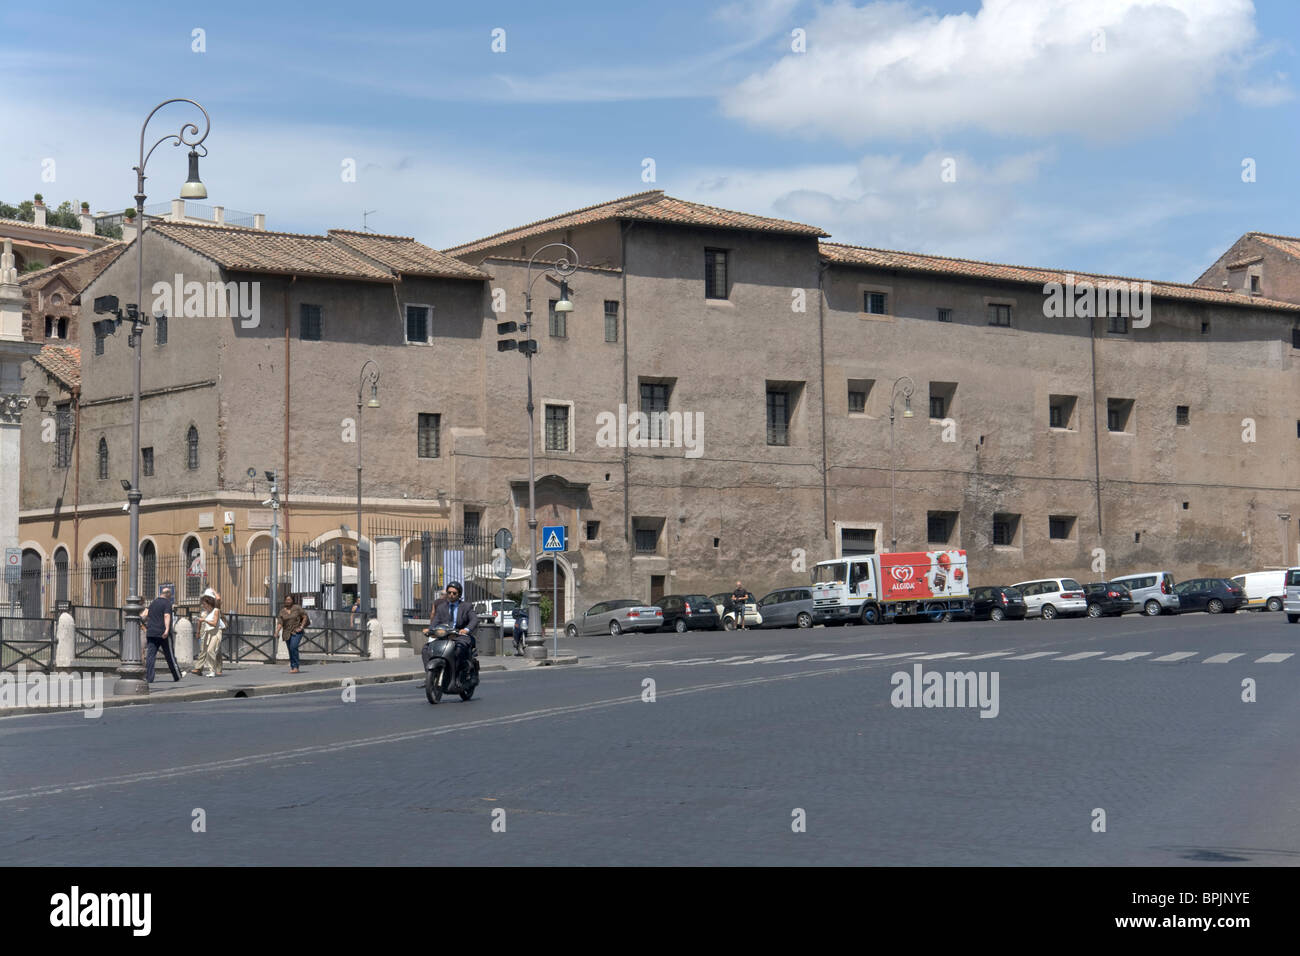 Monastero di Tor de' Specchi, Rome Stock Photo - Alamy